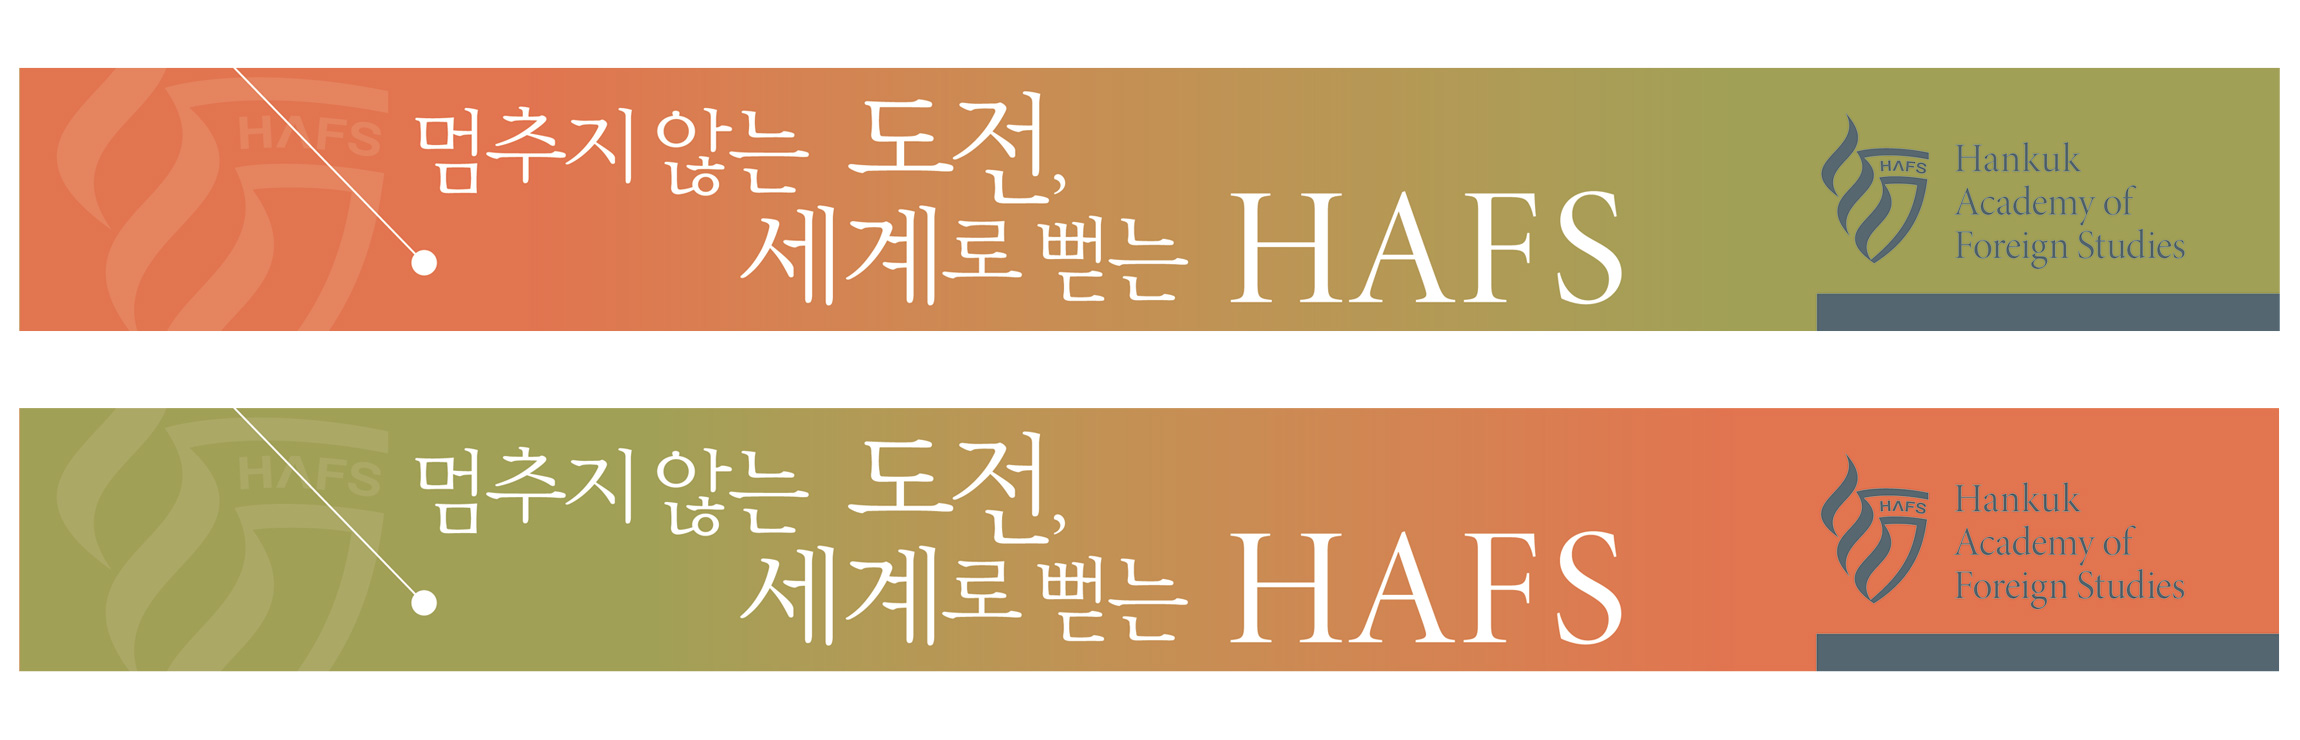 HAFS 용인외국어고등학교 브랜드 & 아이덴터티 hafs-placard-1.jpg